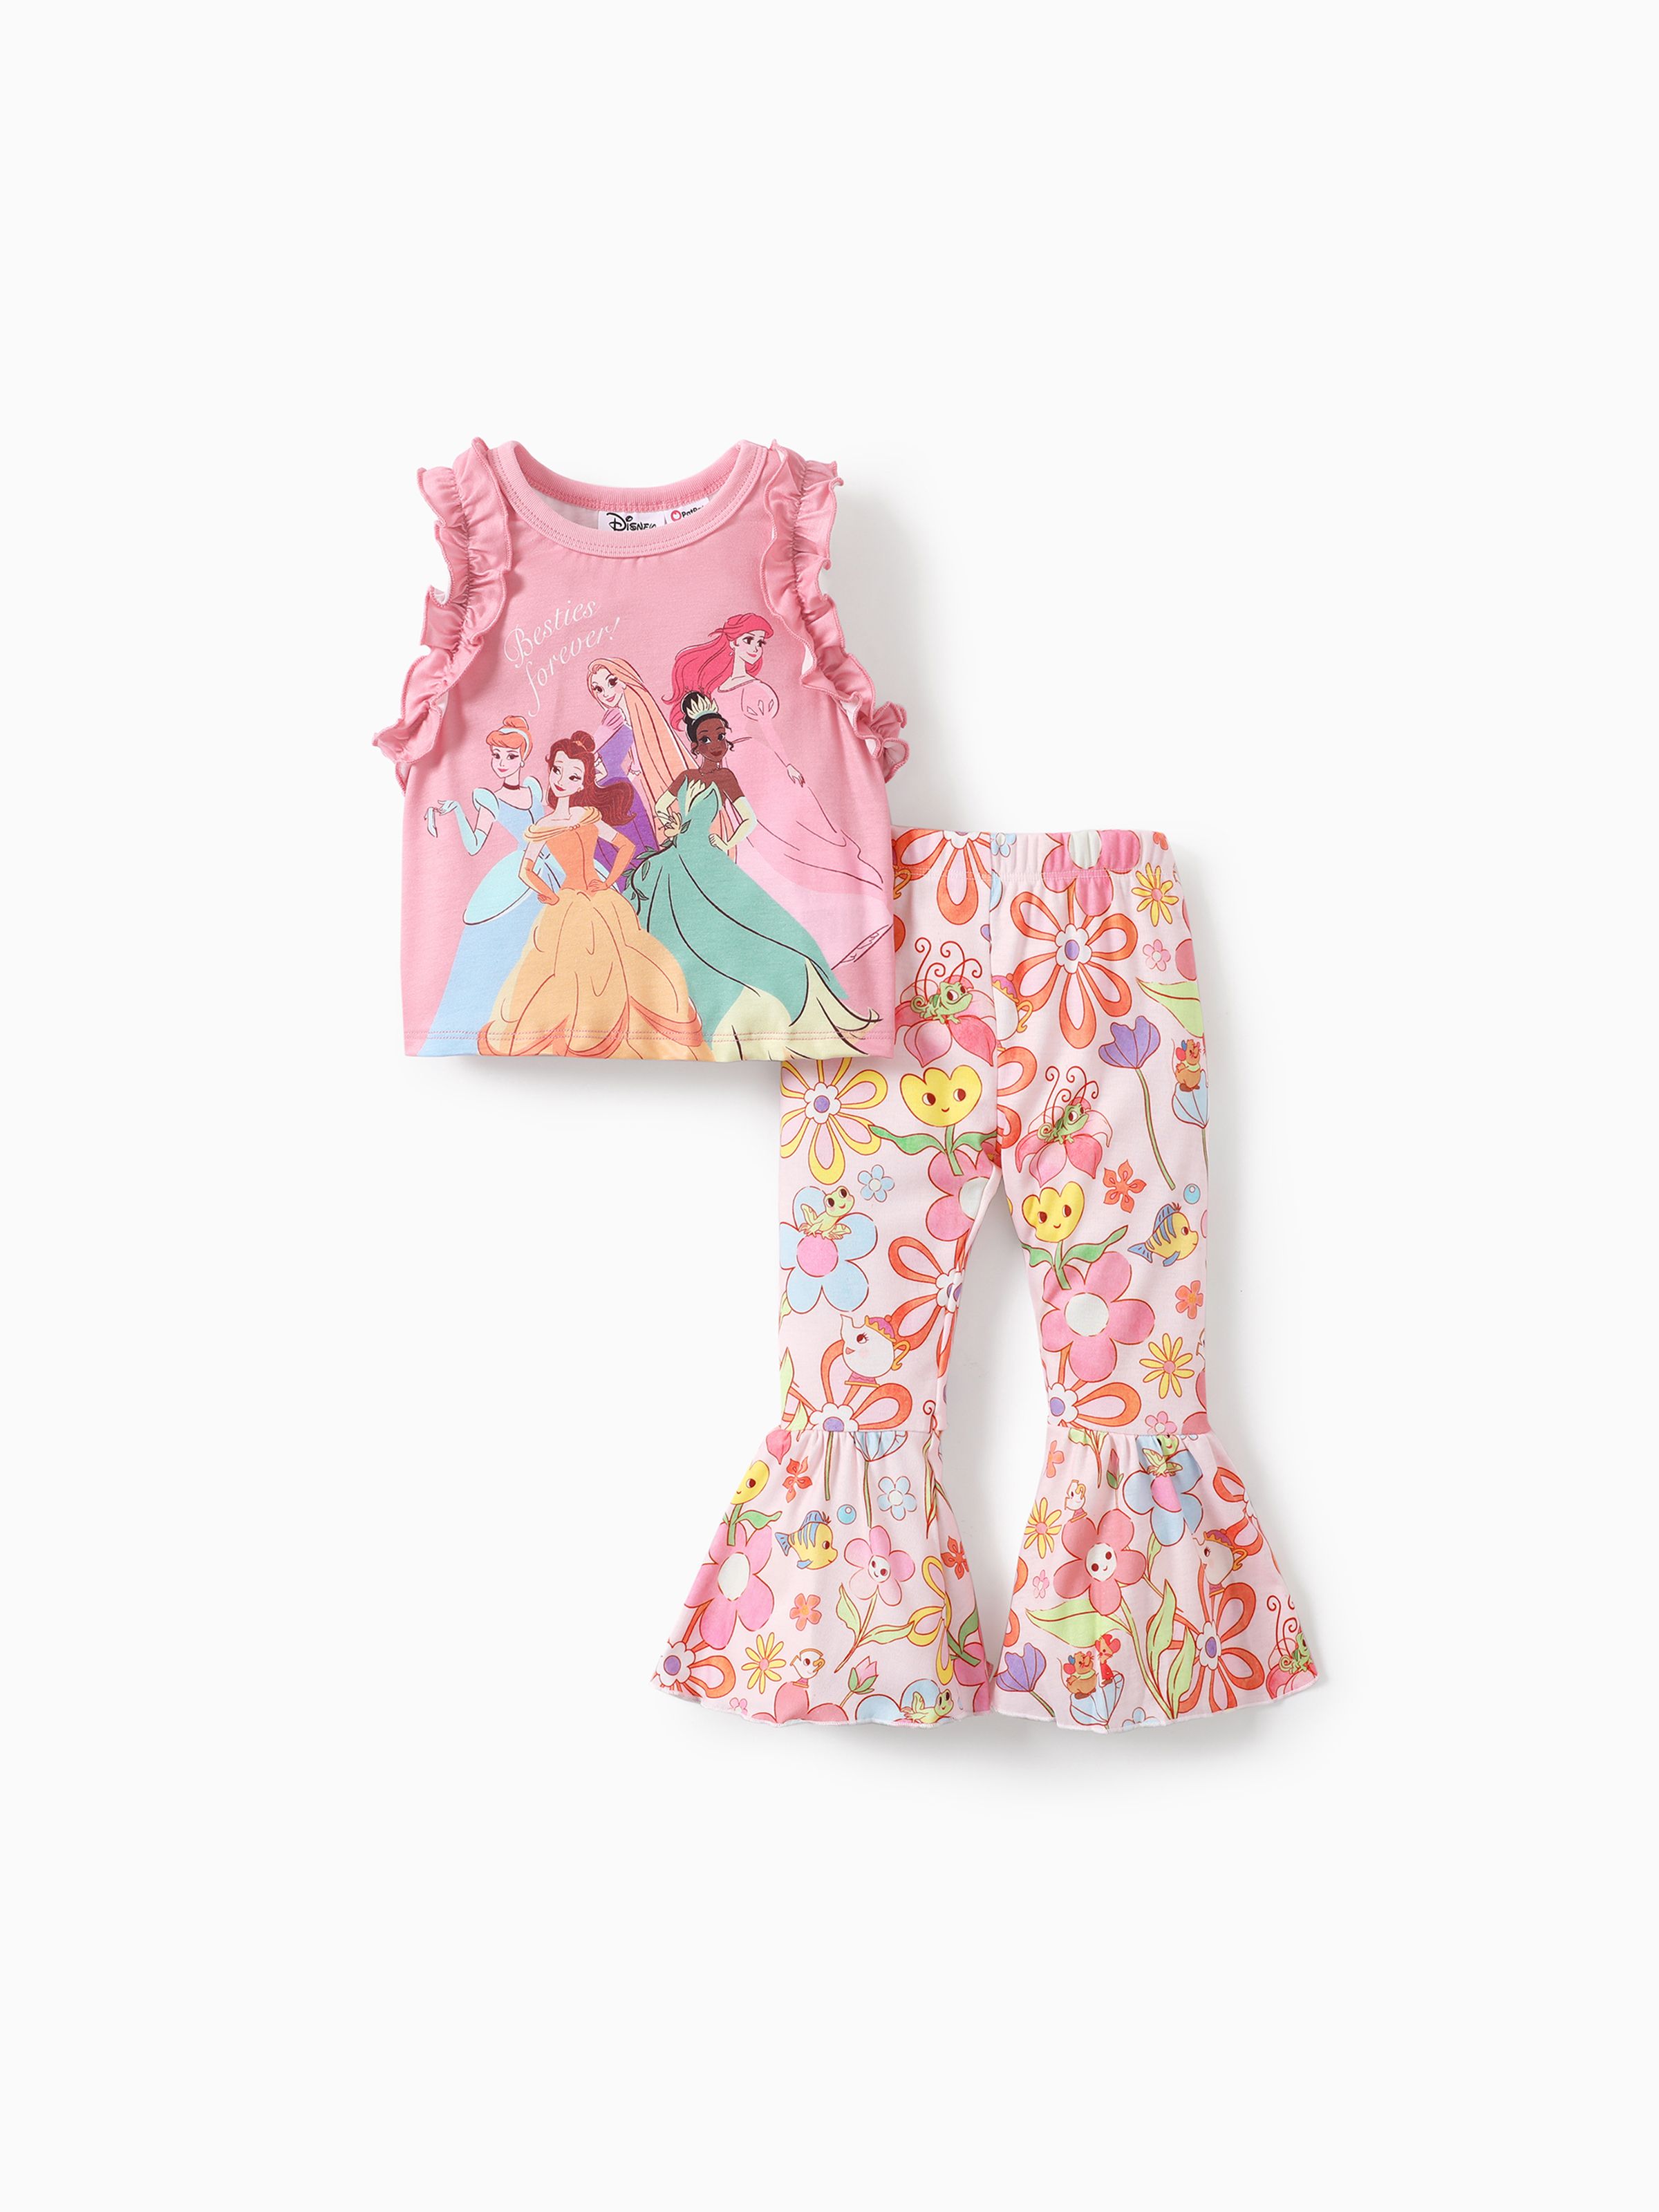 迪士尼公主 2 件套幼兒女孩荷葉邊吊帶背心與花卉圖案緊身喇叭褲甜美復古套裝